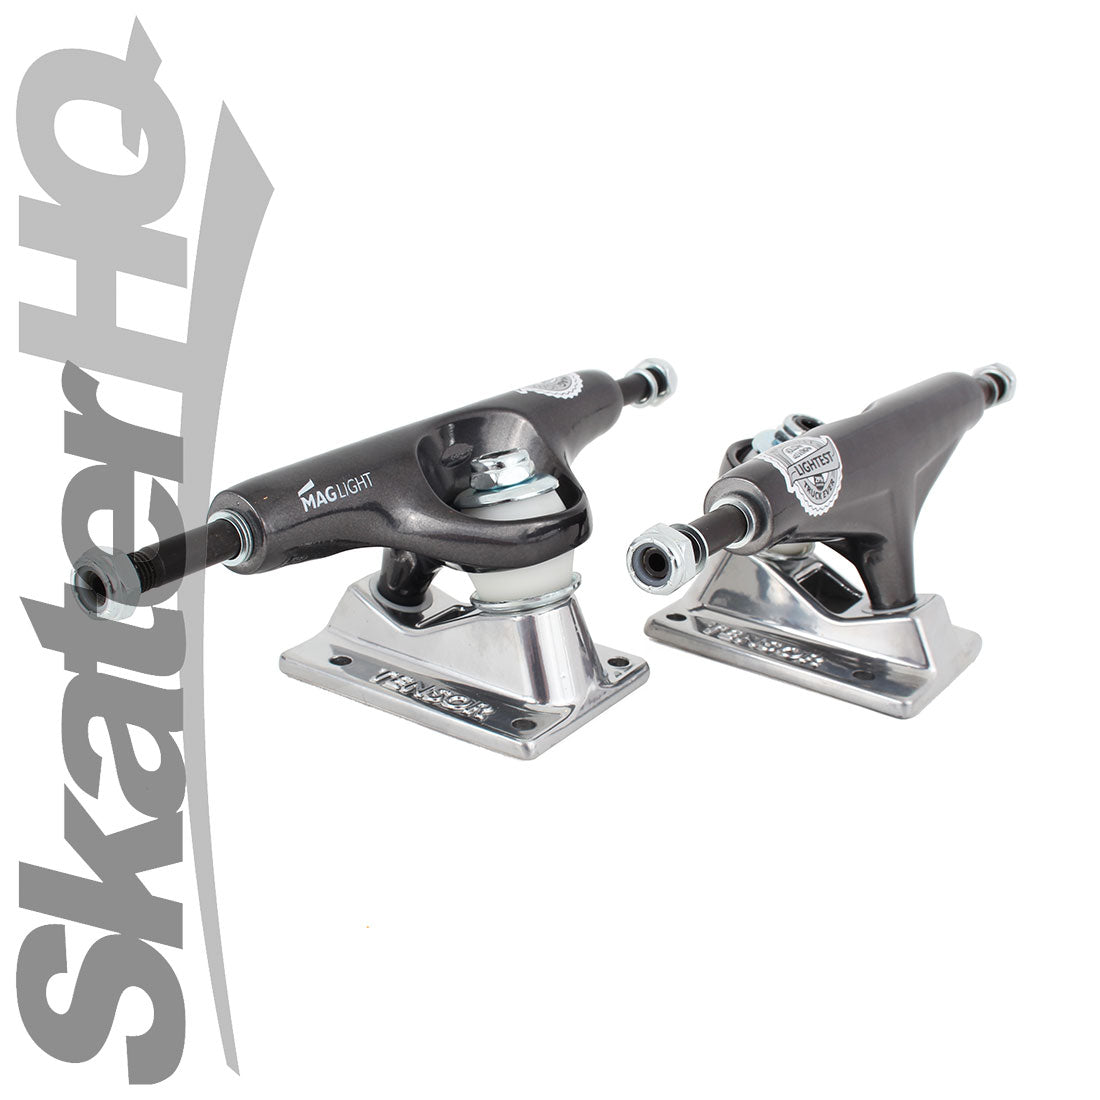 Tensor Mag Light 5.25 - Gunmetal/Silver Skateboard Trucks